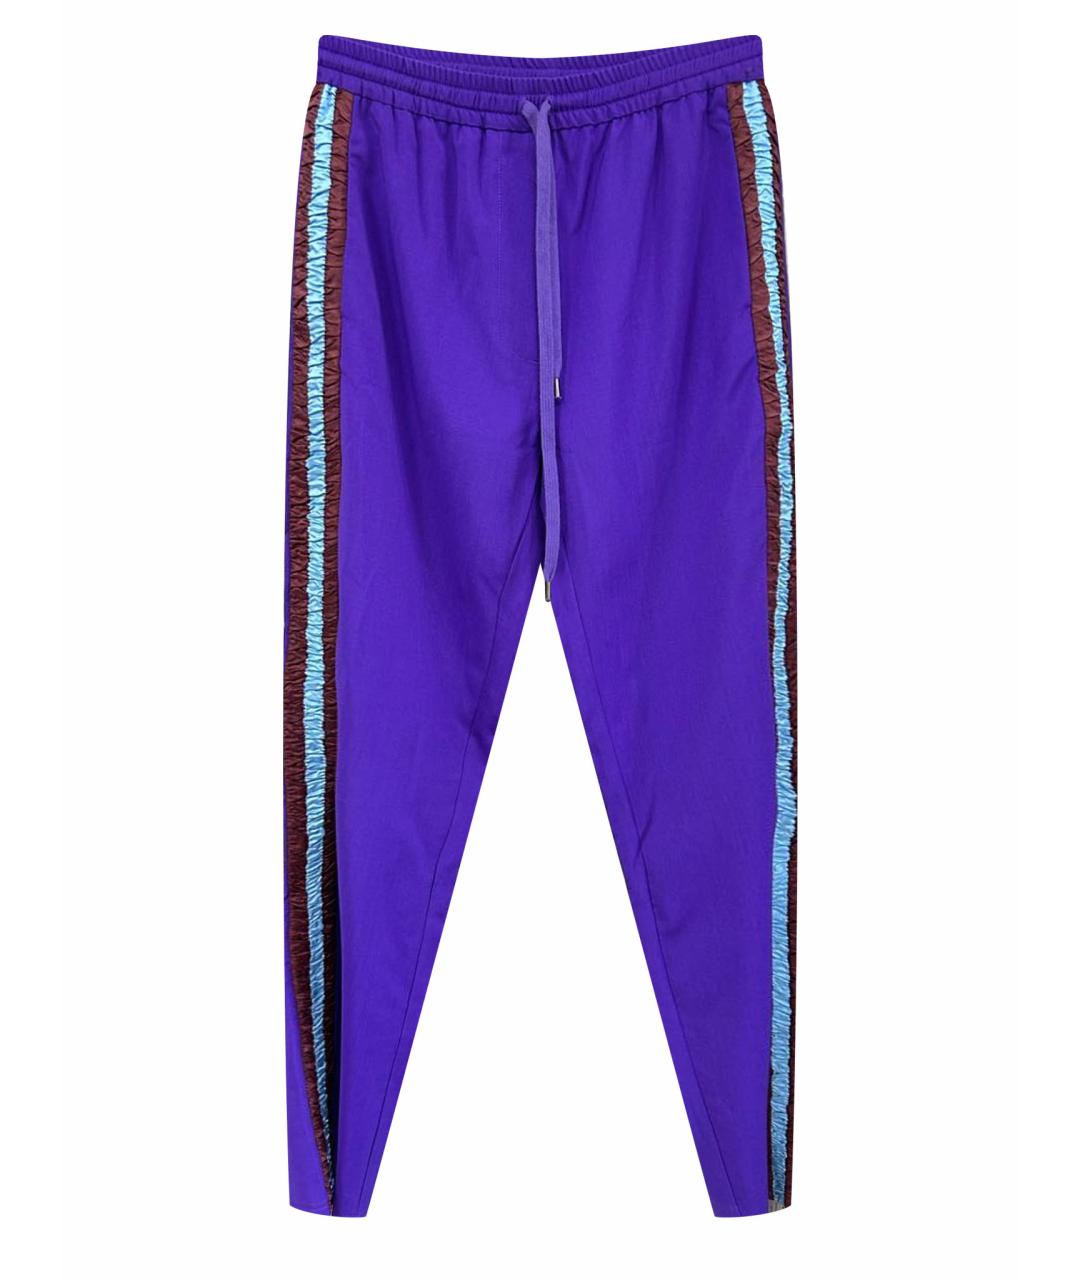 NO. 21 Фиолетовые брюки широкие, фото 1